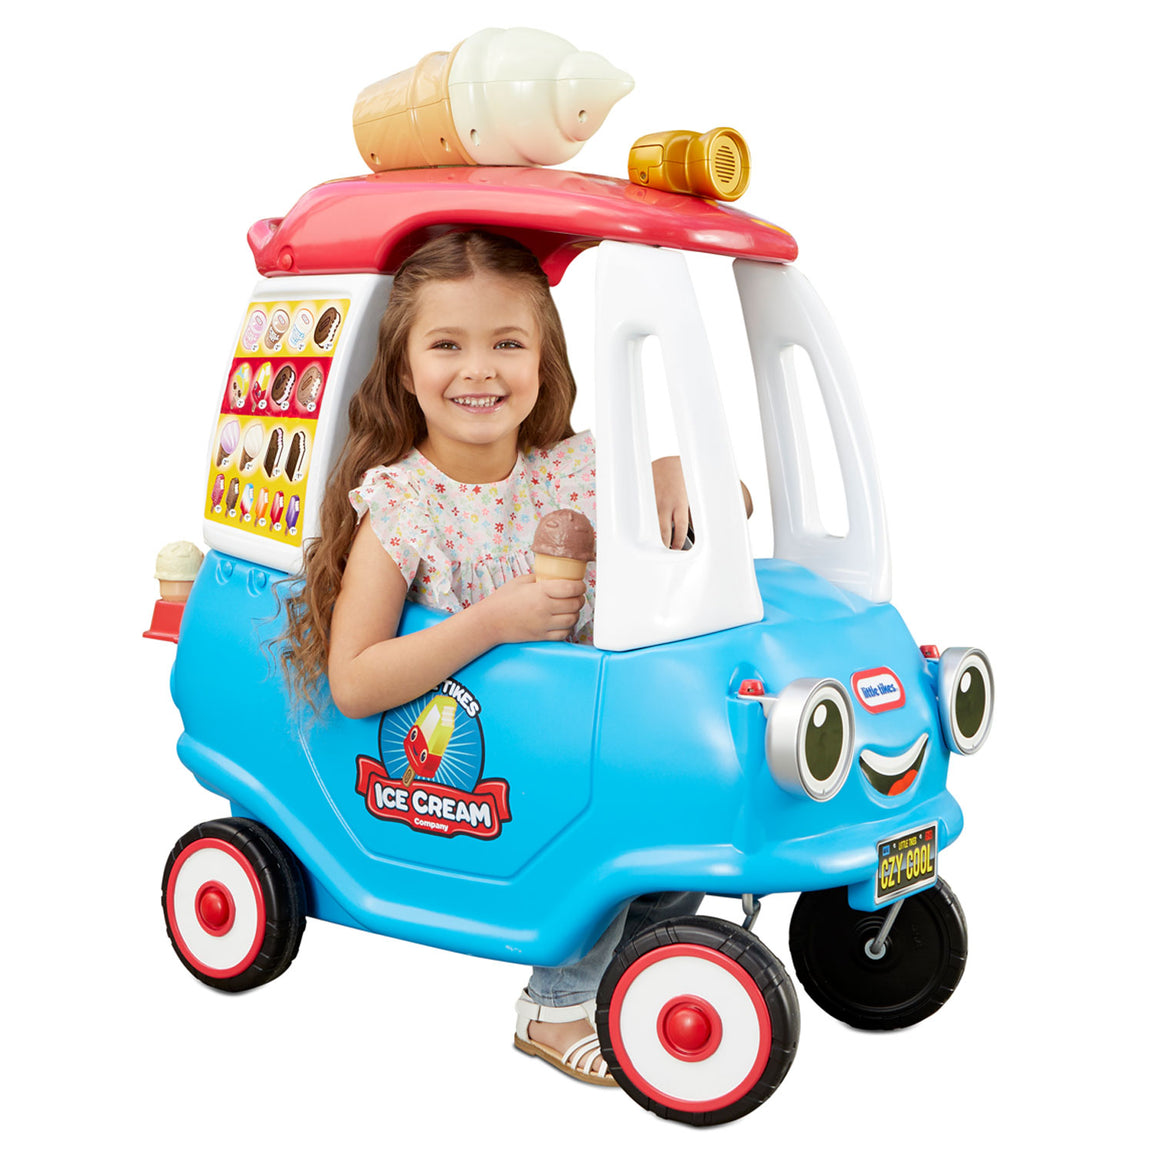 Kids Wooden Interactive Ice Cream Cart Playset Toy w/ Chalkboard & Storage